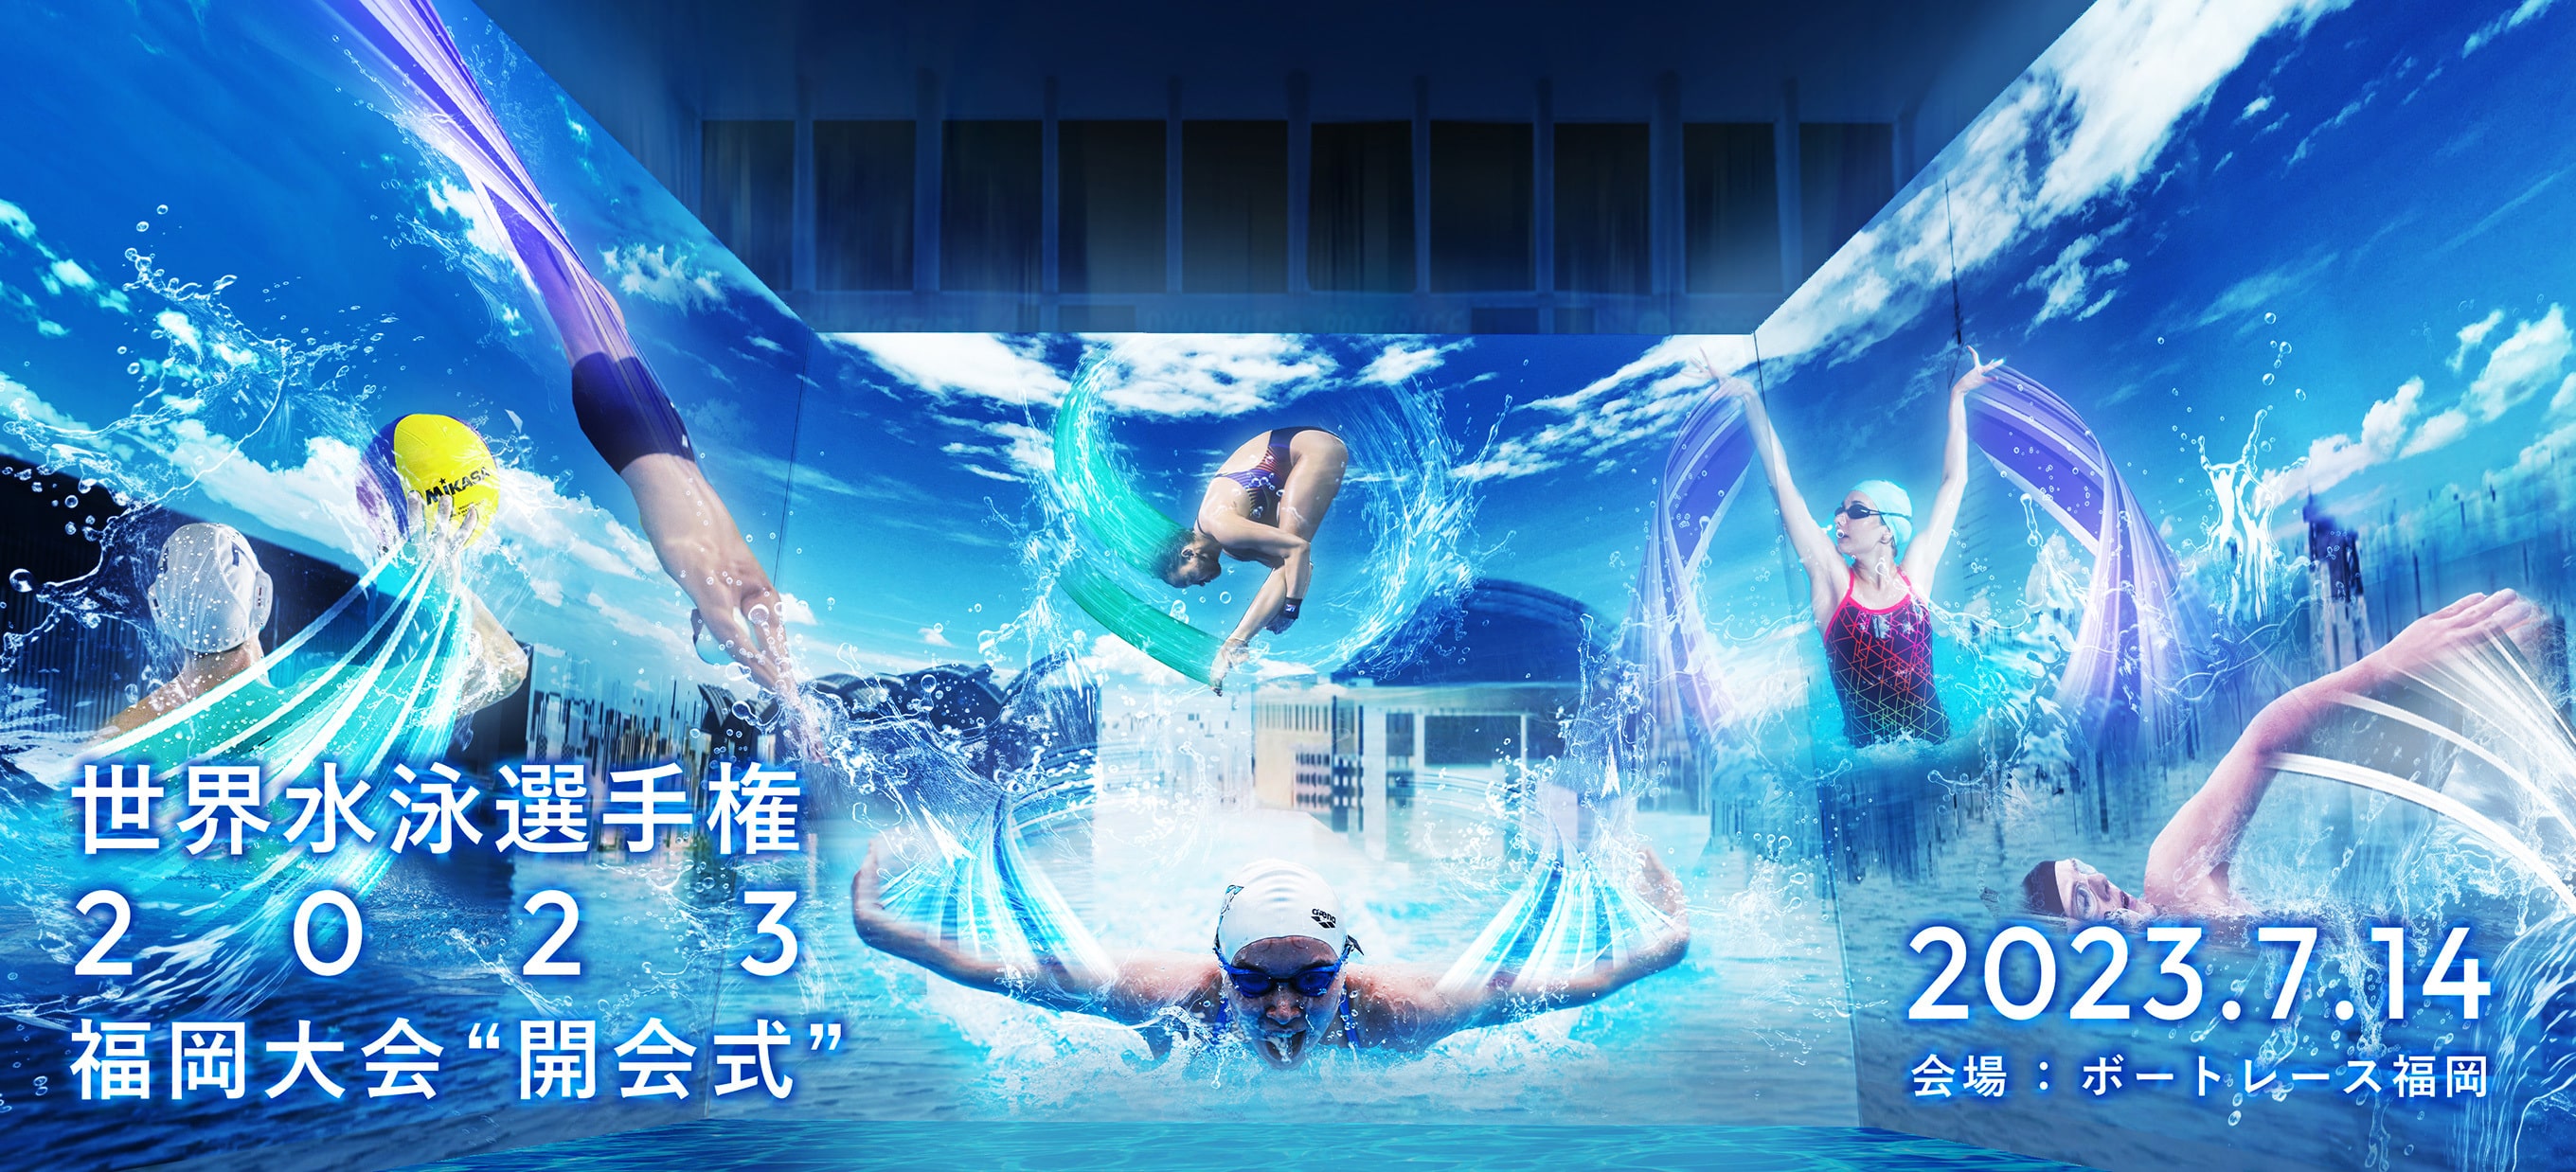 世界水泳選手権2023福岡大会 - CREATIVE HOUSE